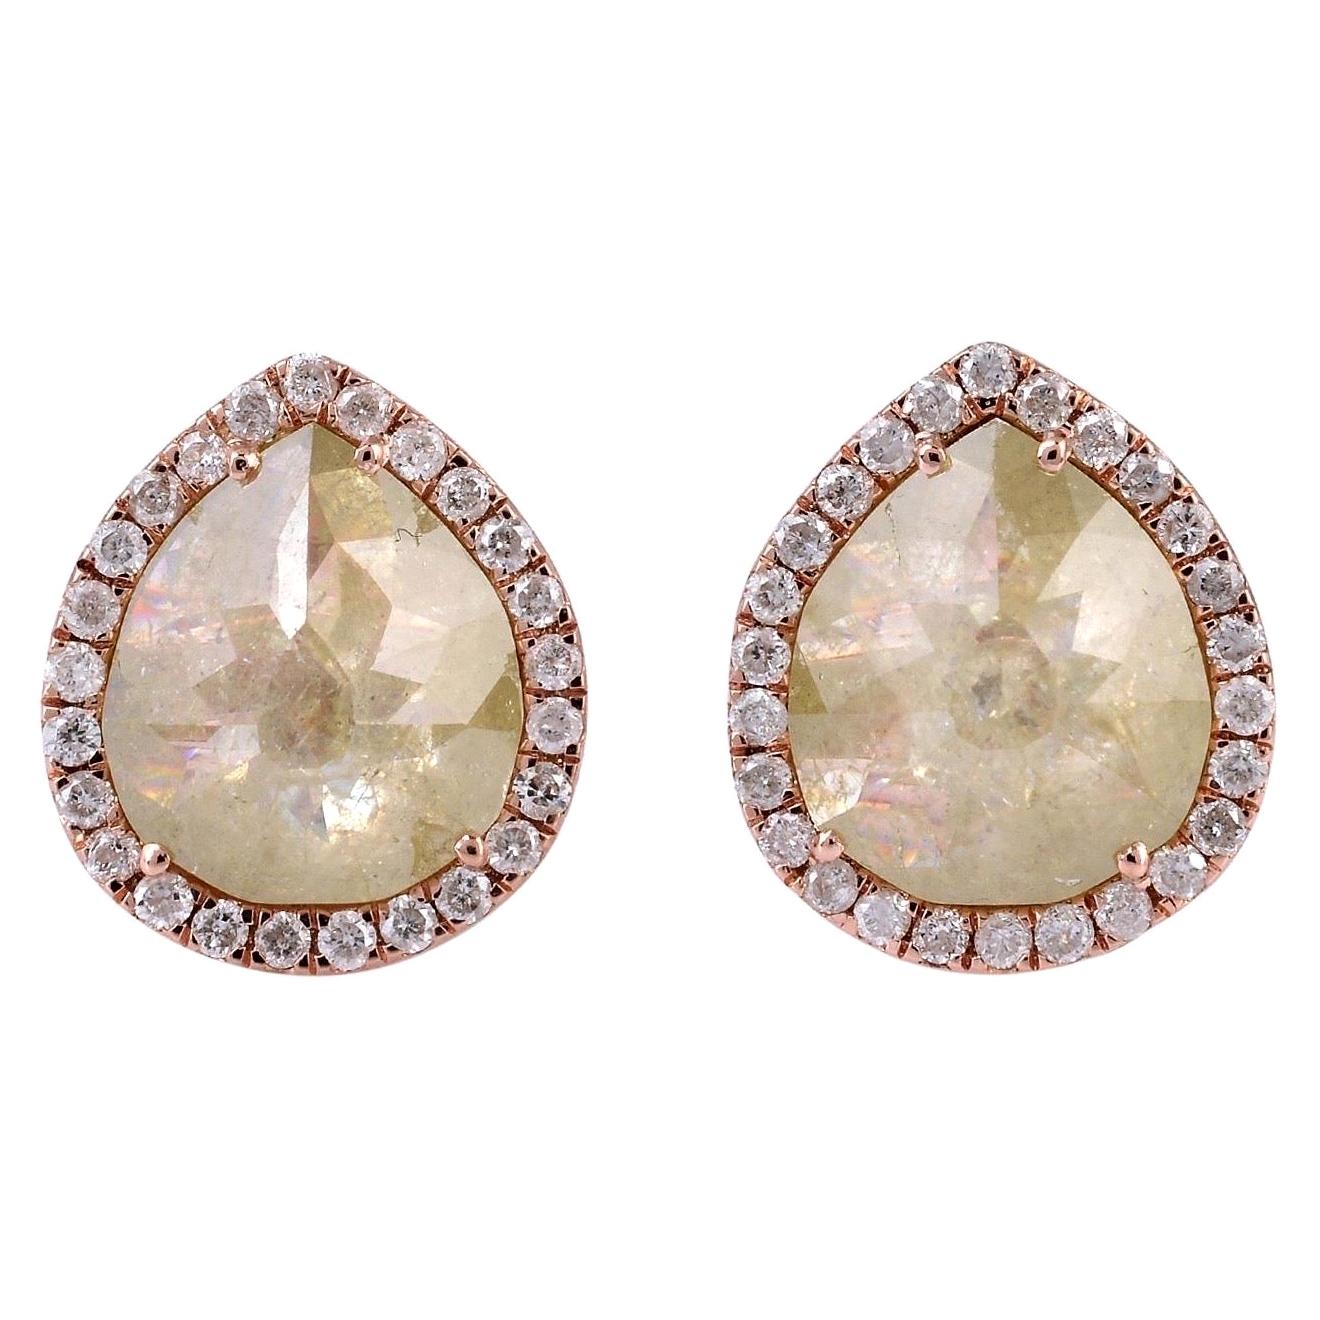 Fancy Diamond 18 Karat Gold Stud Earrings